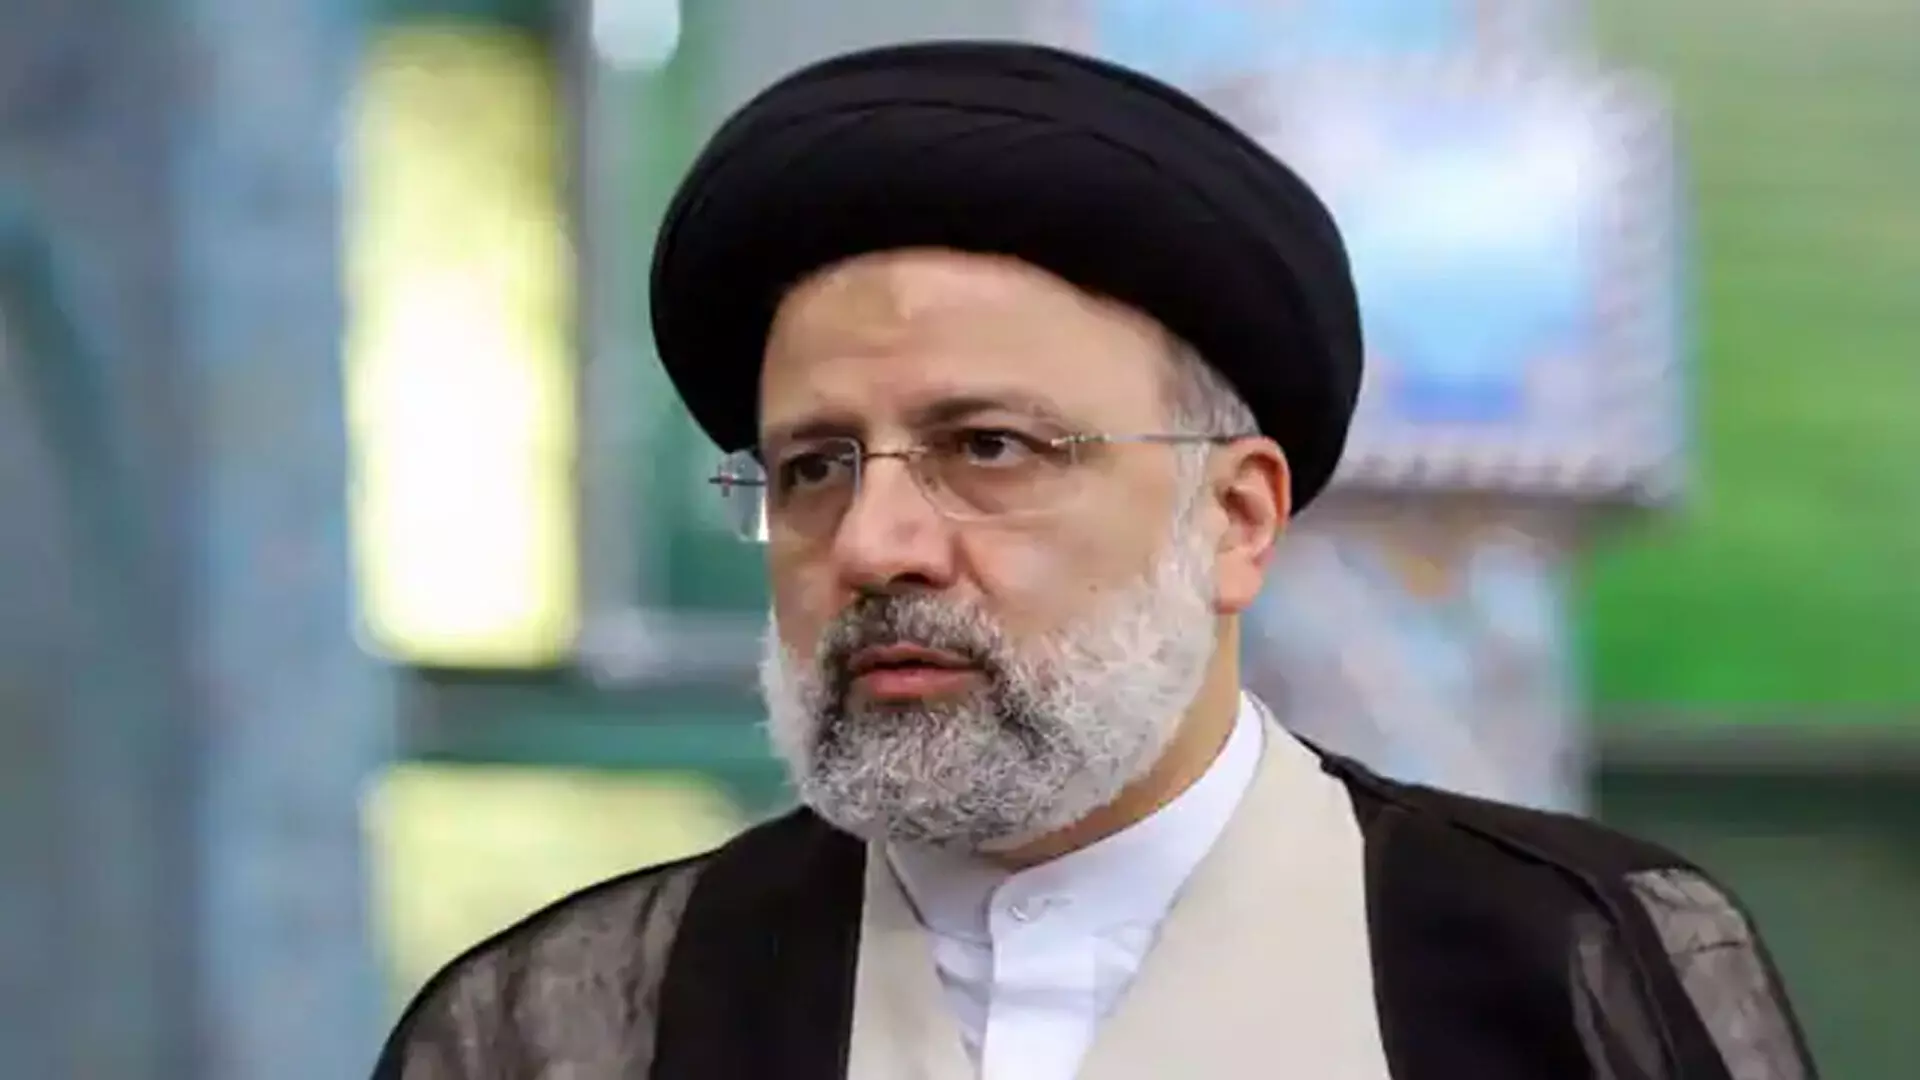 ईरान के राष्ट्रपति ने इजरायल द्वारा जवाबी हमला करने पर कड़ी प्रतिक्रिया की चेतावनी दी